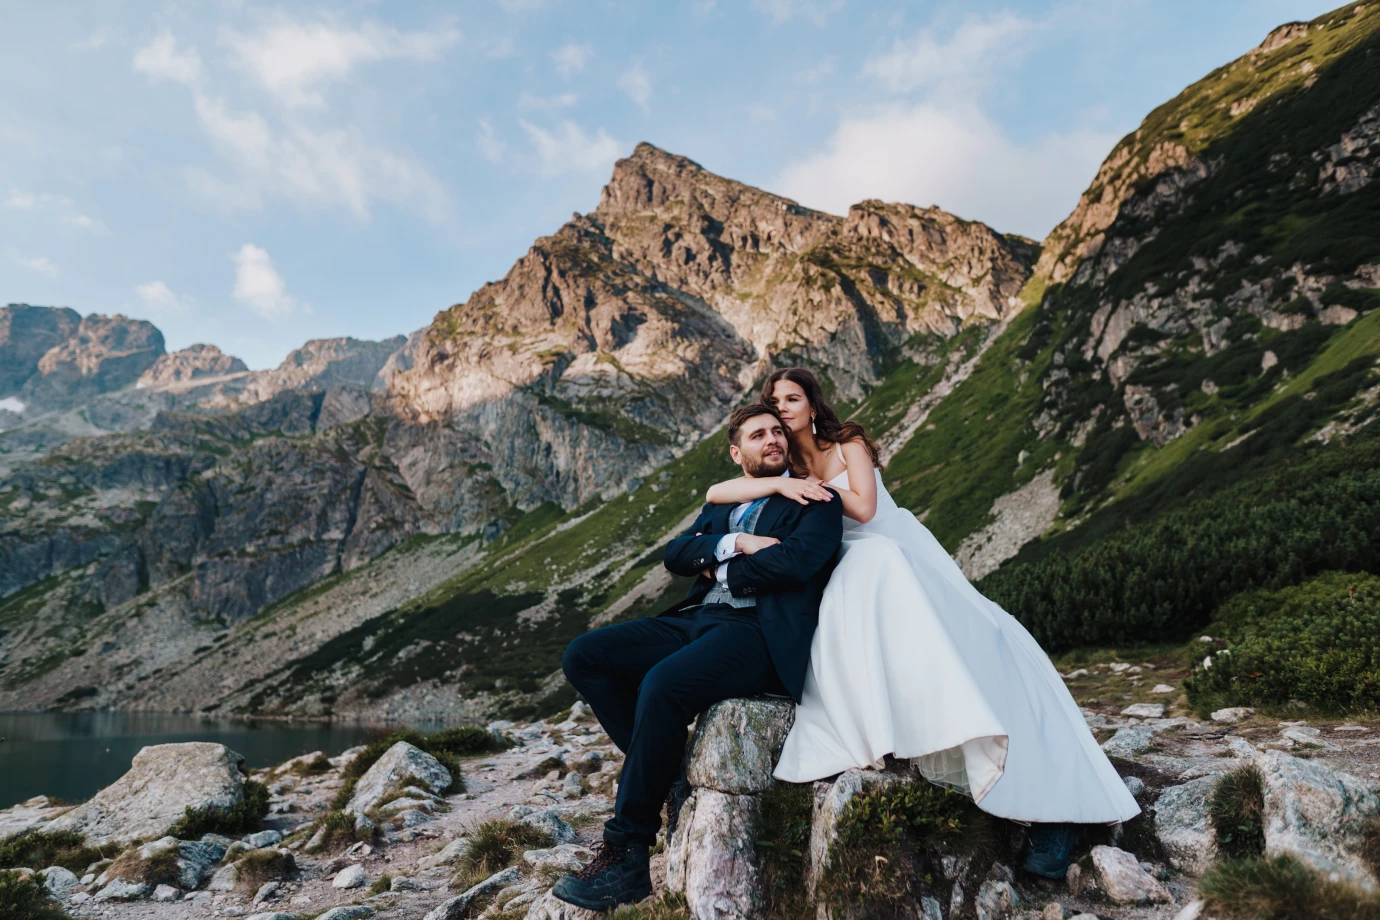 fotograf bydgoszcz a-kolodziejczak-fotografia portfolio zdjecia slubne inspiracje wesele plener slubny sesja slubna